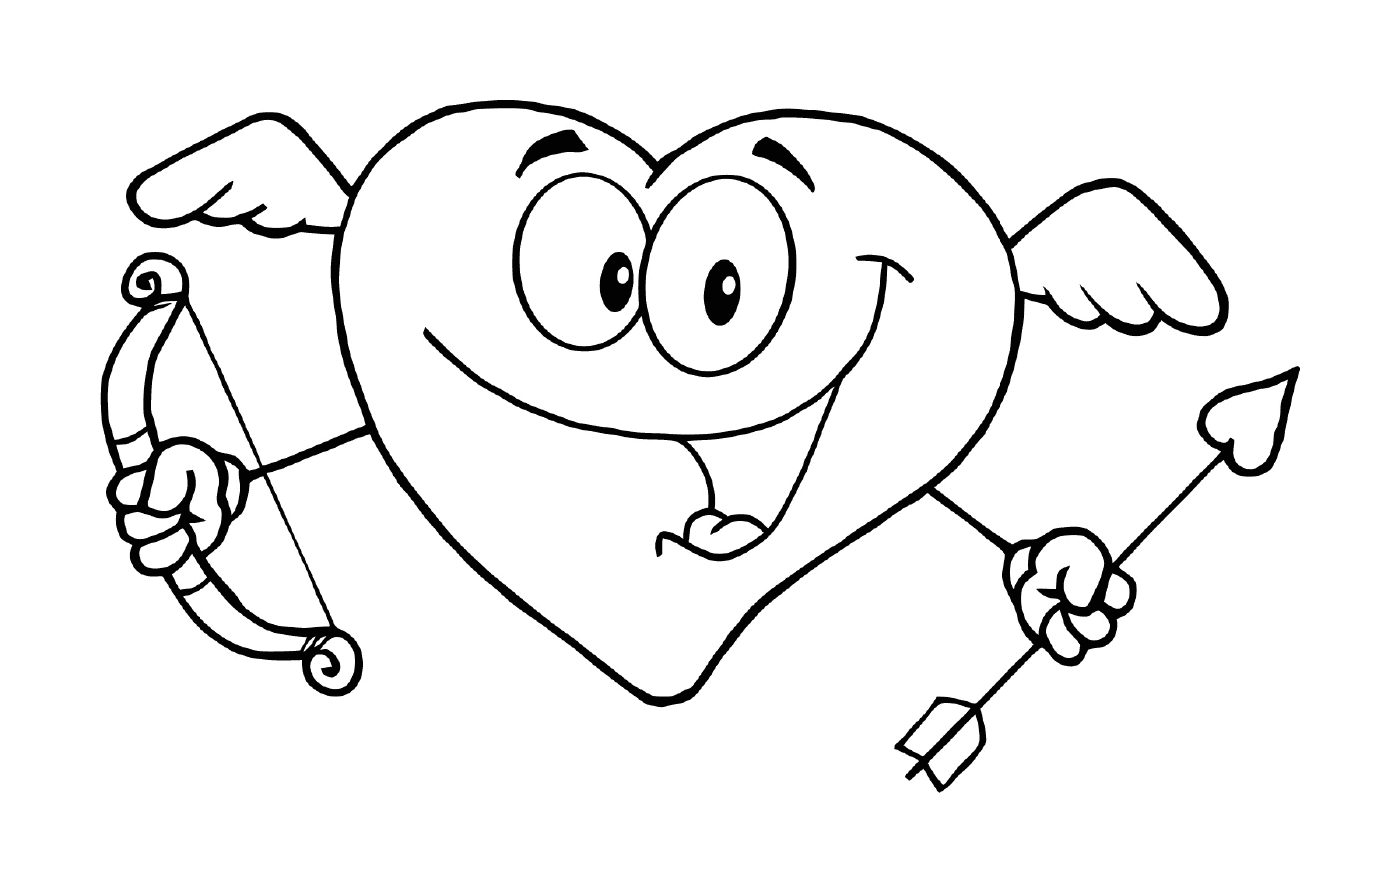  Um desenho animado com um coração sorridente 